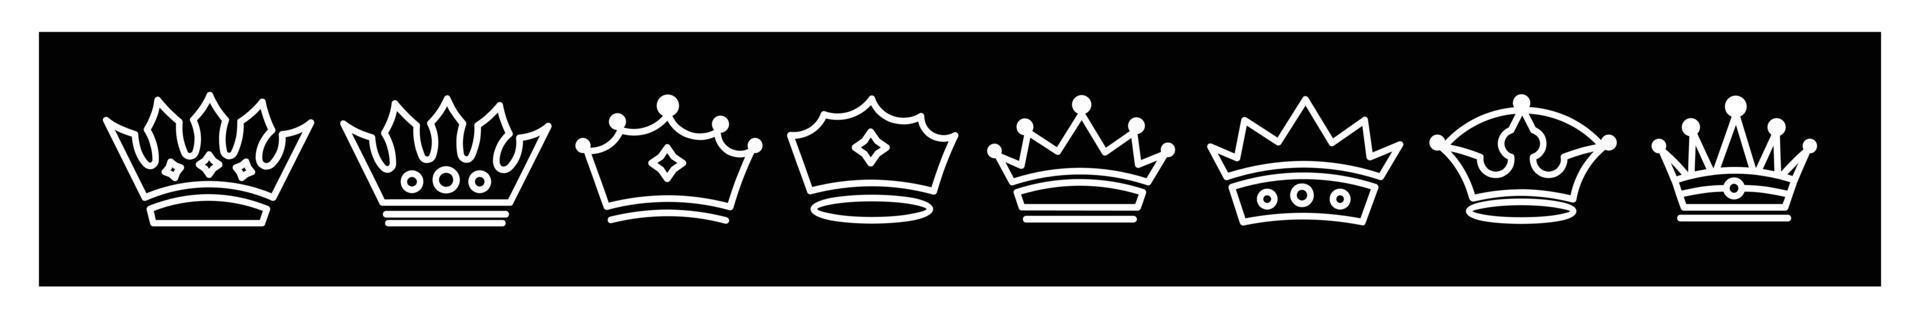 krona uppsättning kunglig ikoner samling uppsättning, stor samling kronor årgång vektor ikoner för design på svart bakgrund